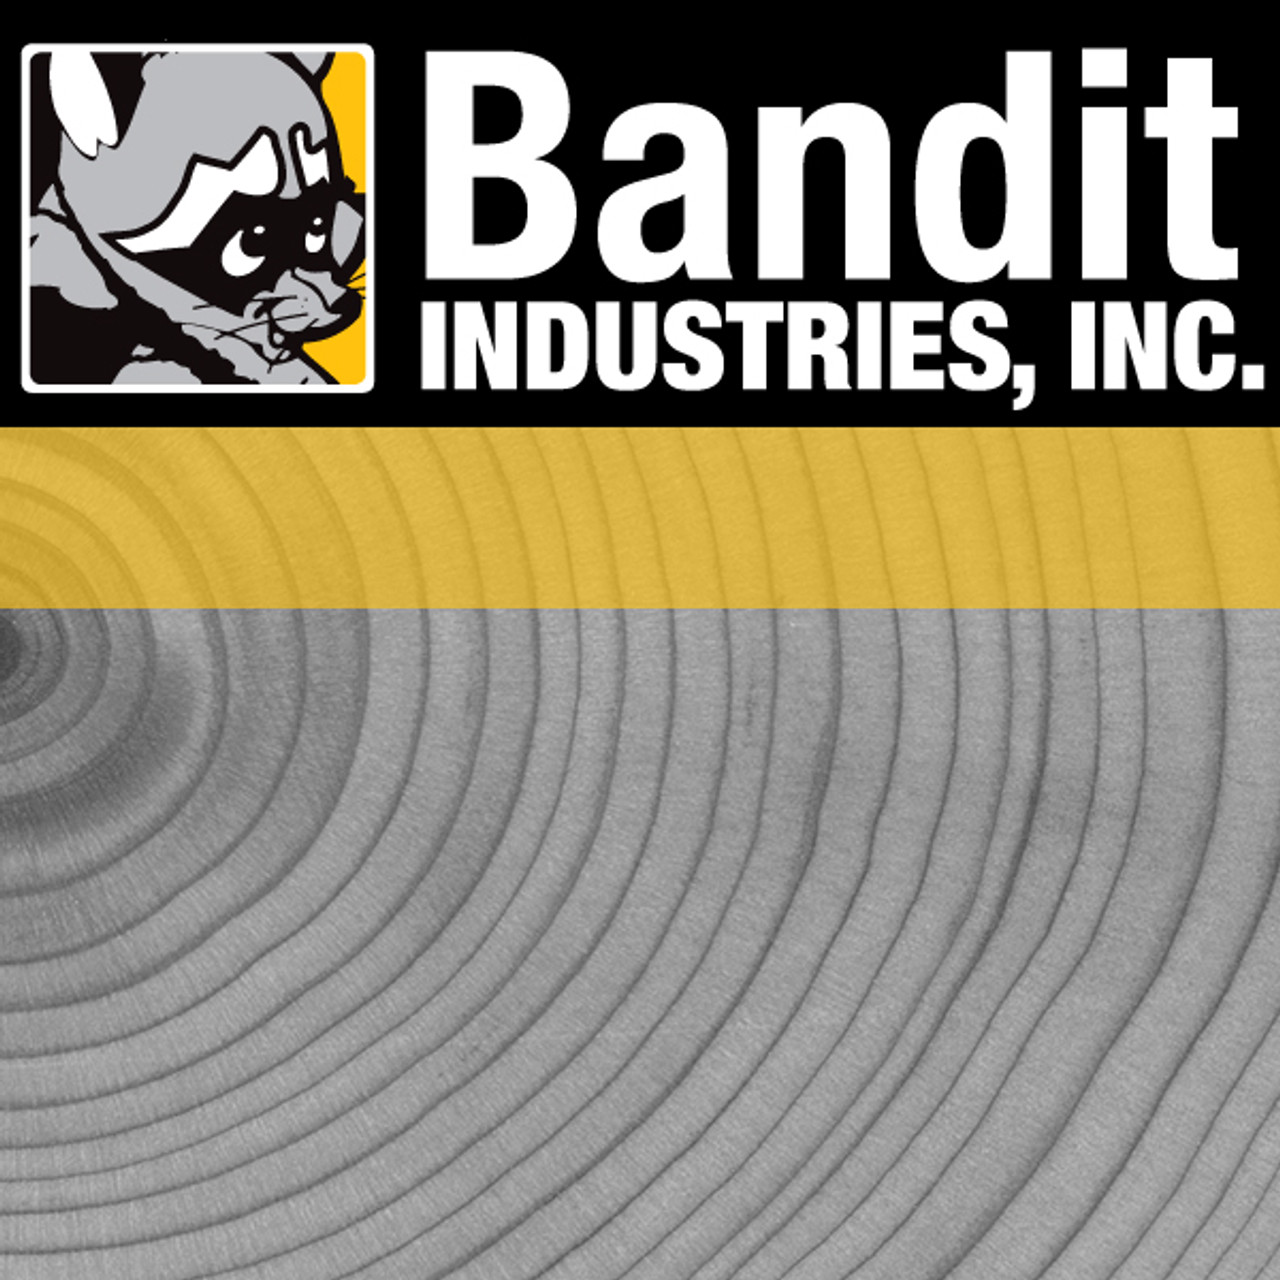 900-4900-17: BANDIT M-90 REAR CHIPPER BEARING BOLTS 1/2 X 13 1 1/2 HEX HEA